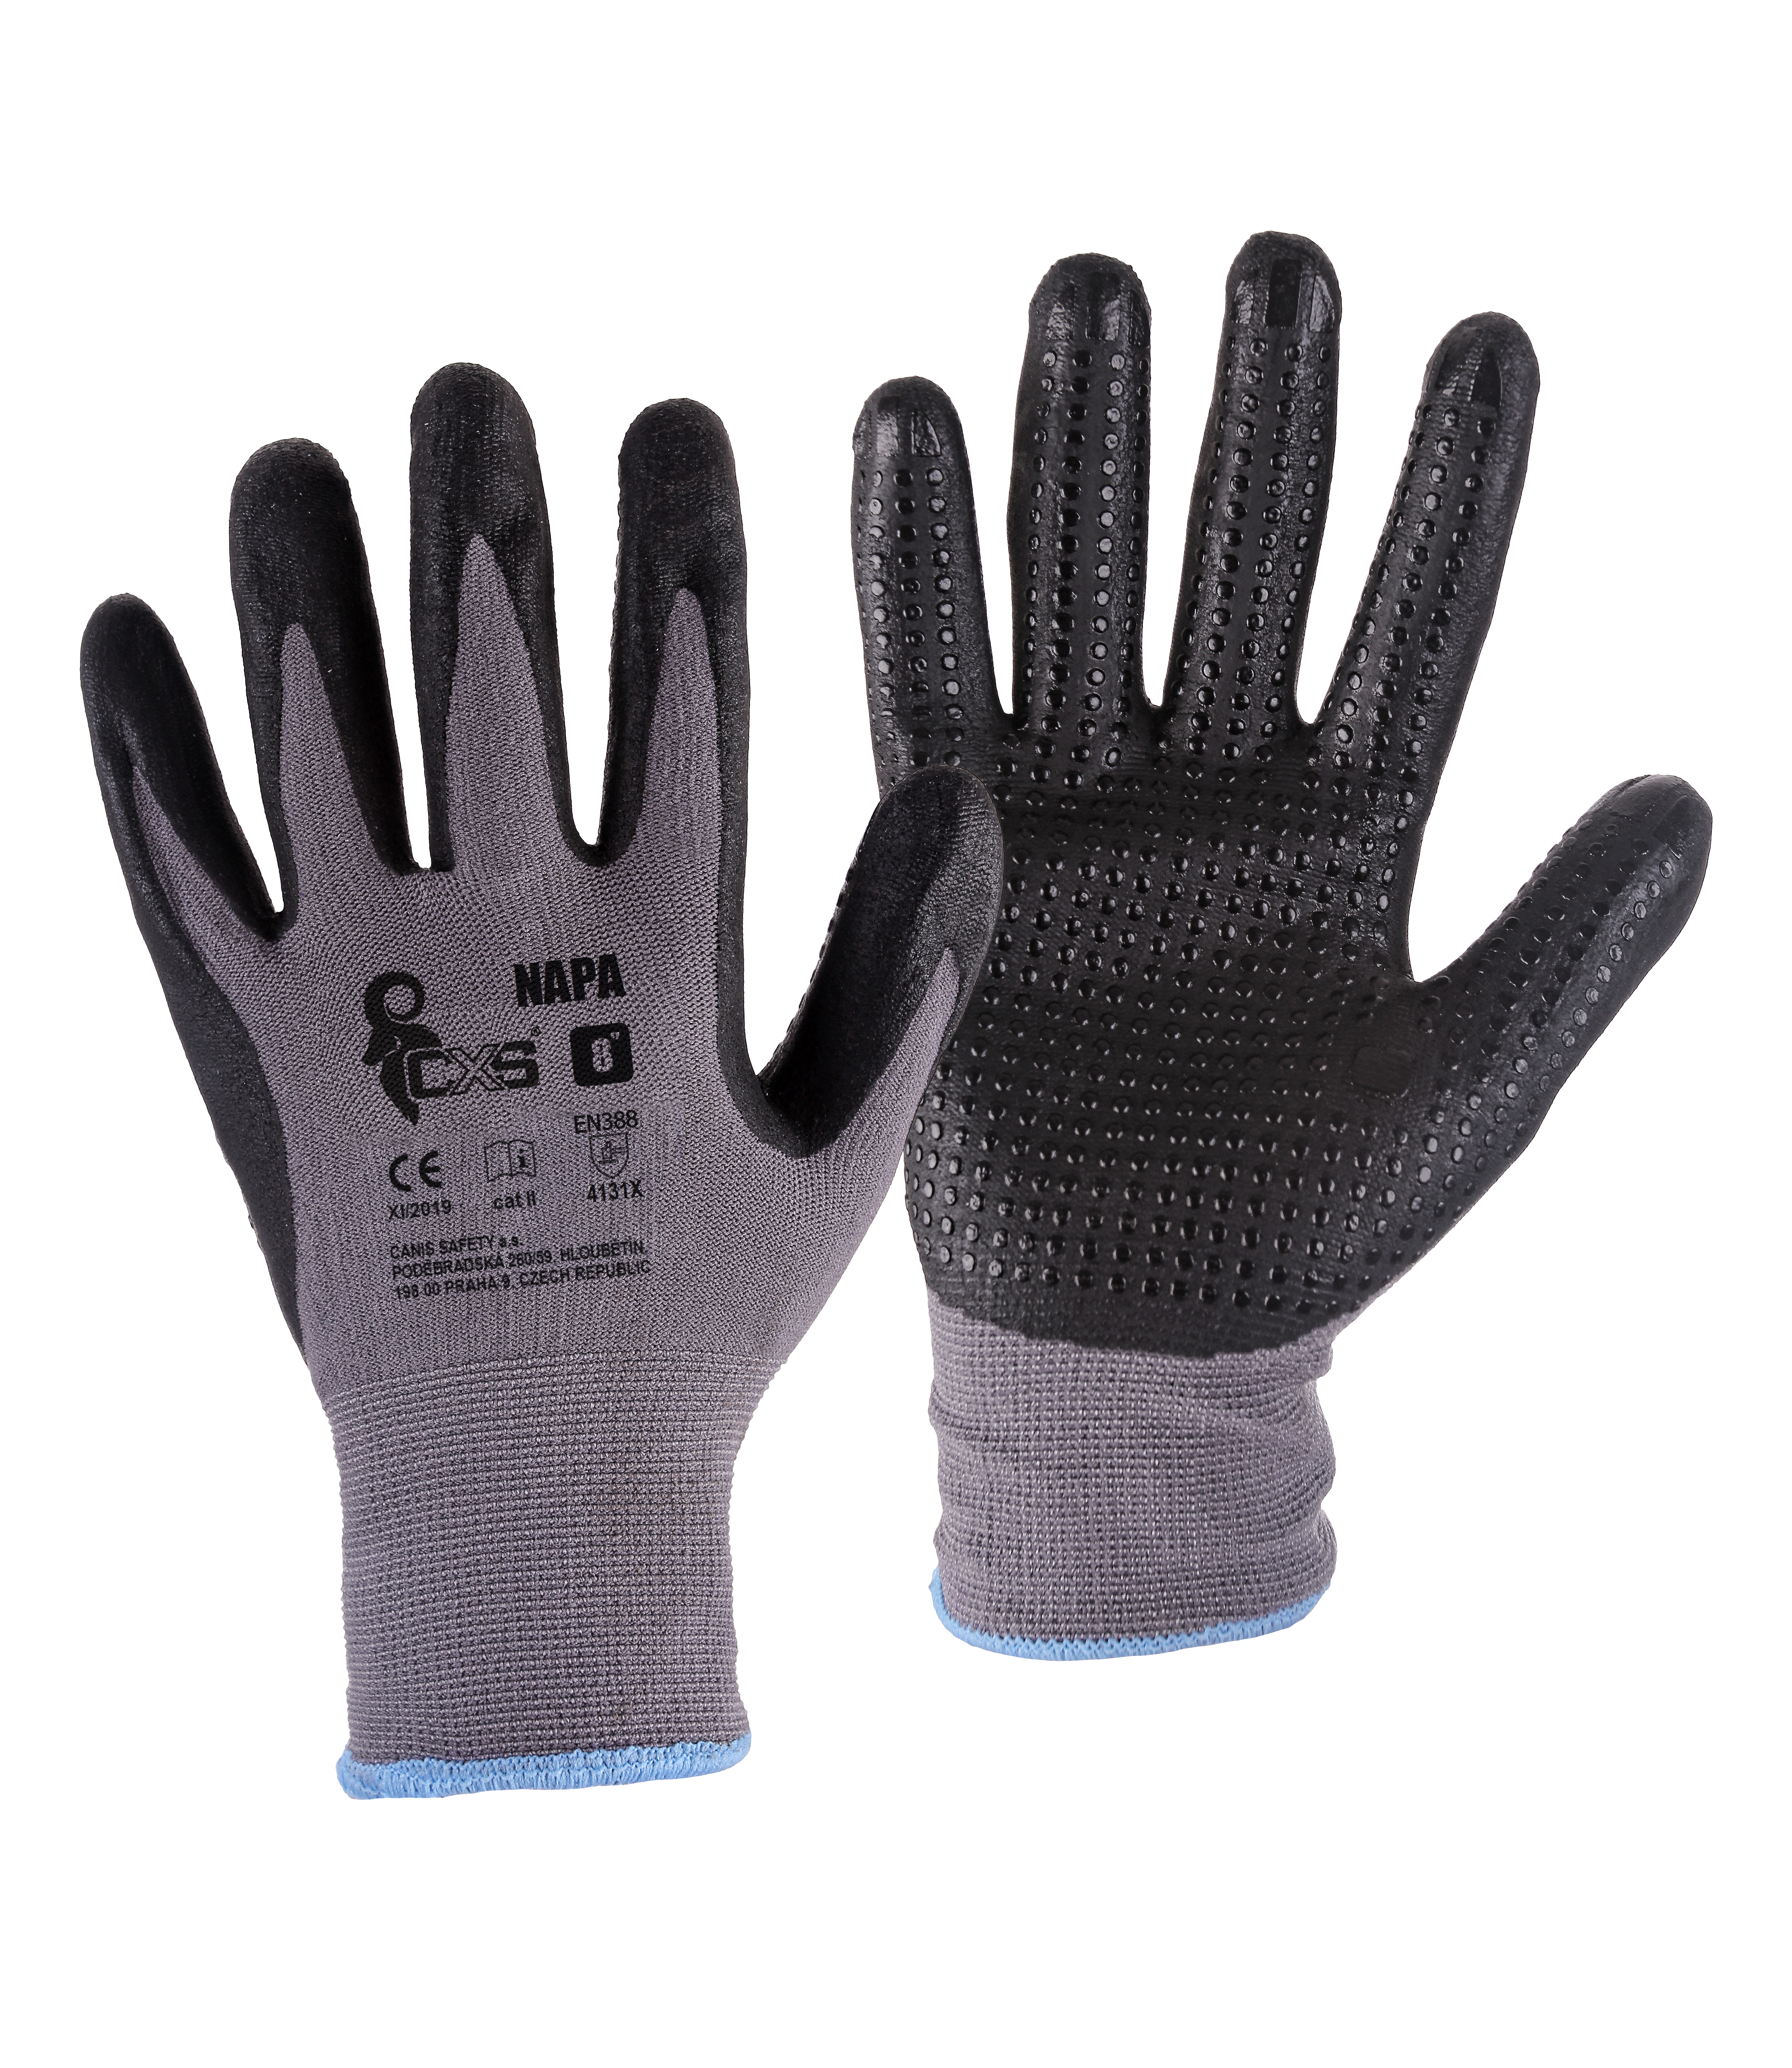 rukavice NAPA, s úpletem, šedo - černé, velikost 7 0.04 Kg TOP Sklad4 606034 66